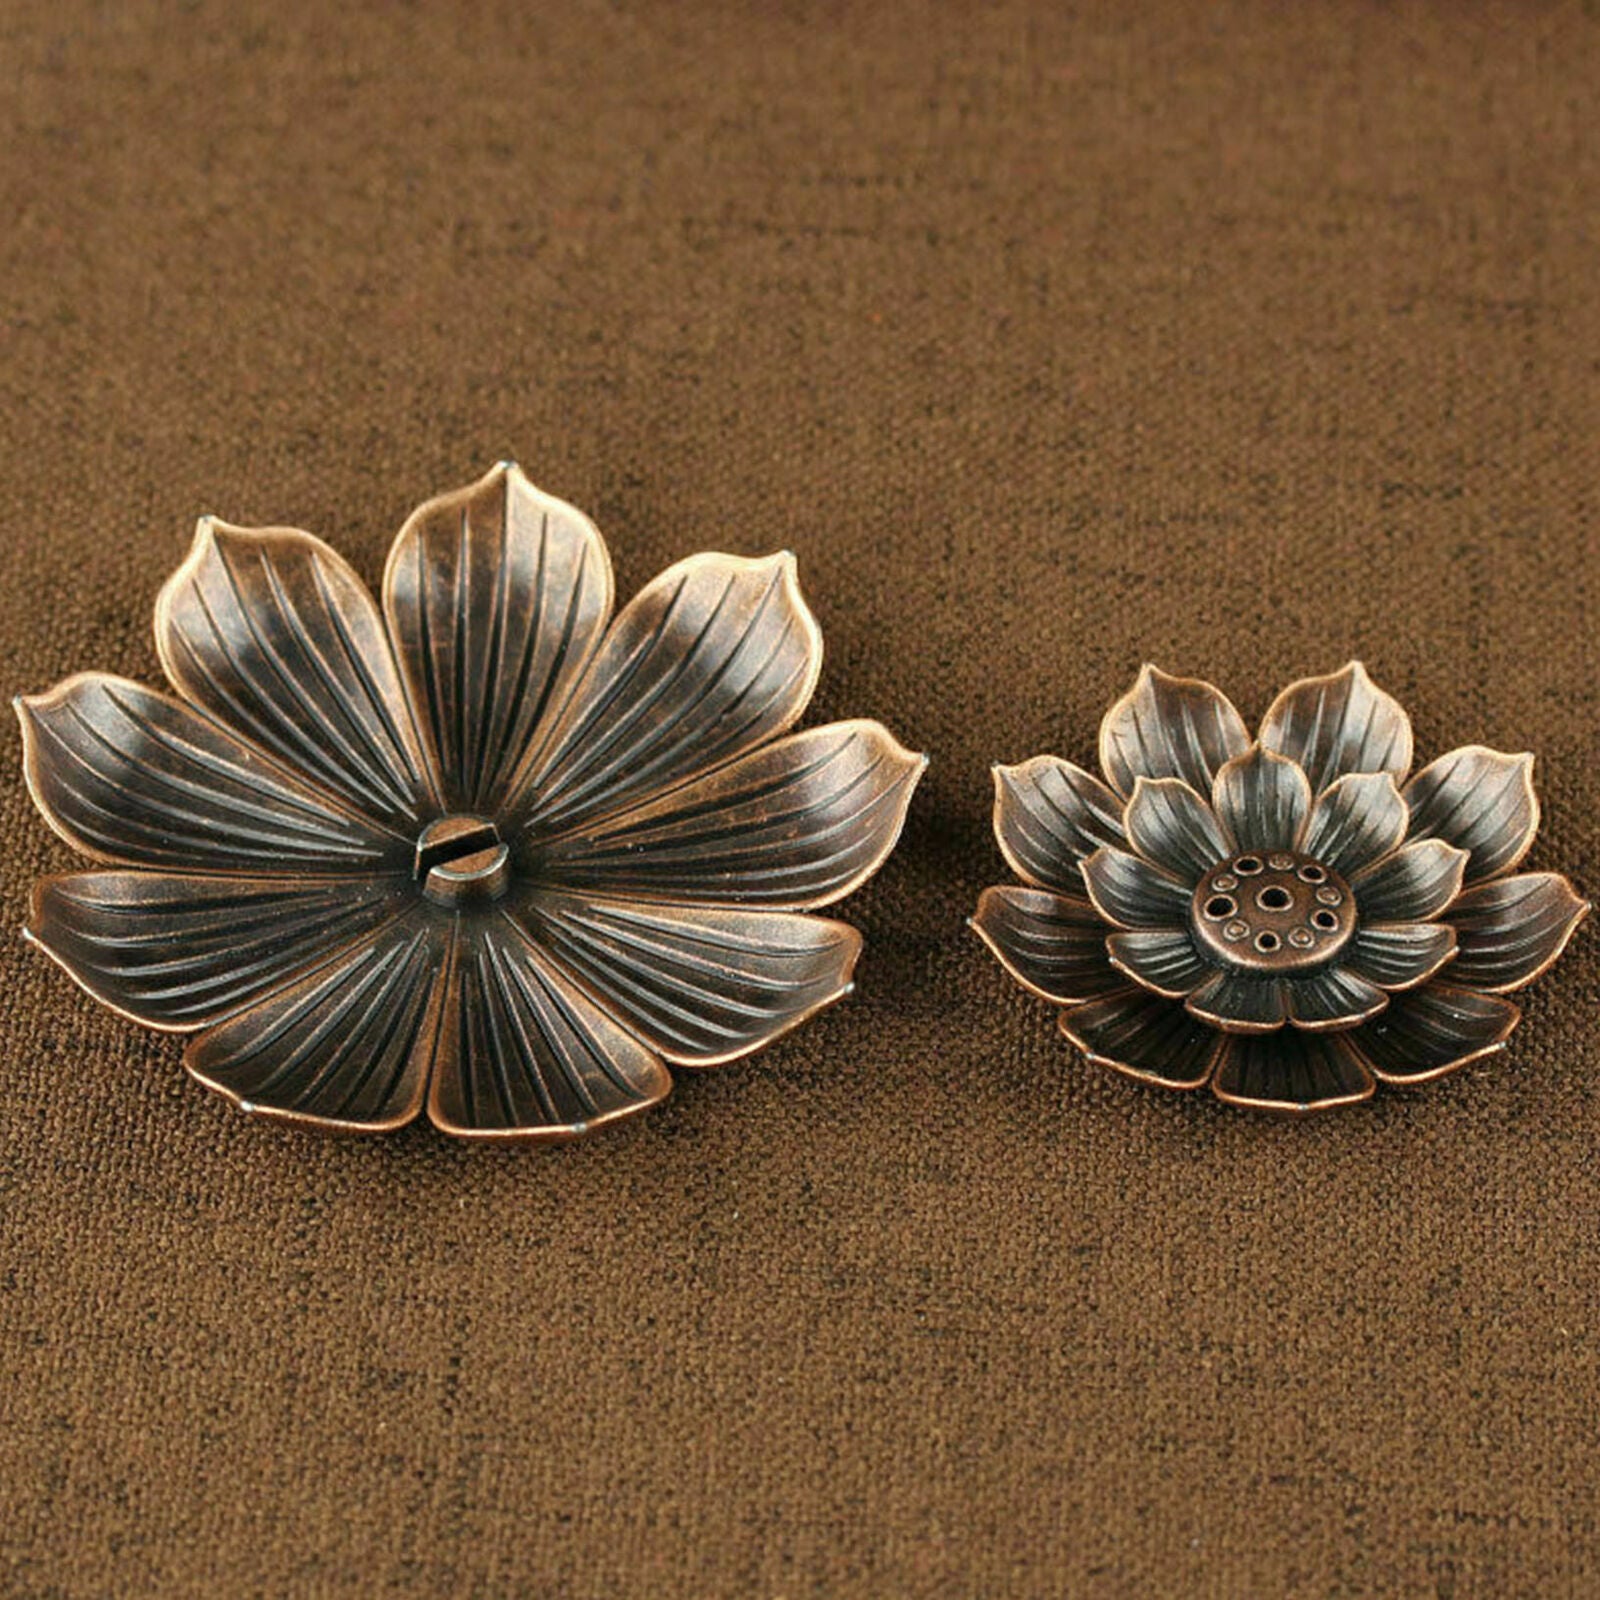 1*Zinc Alloy Lotus Flower Incense Burner Stick Holder Plate Censer Buddhism-Coil